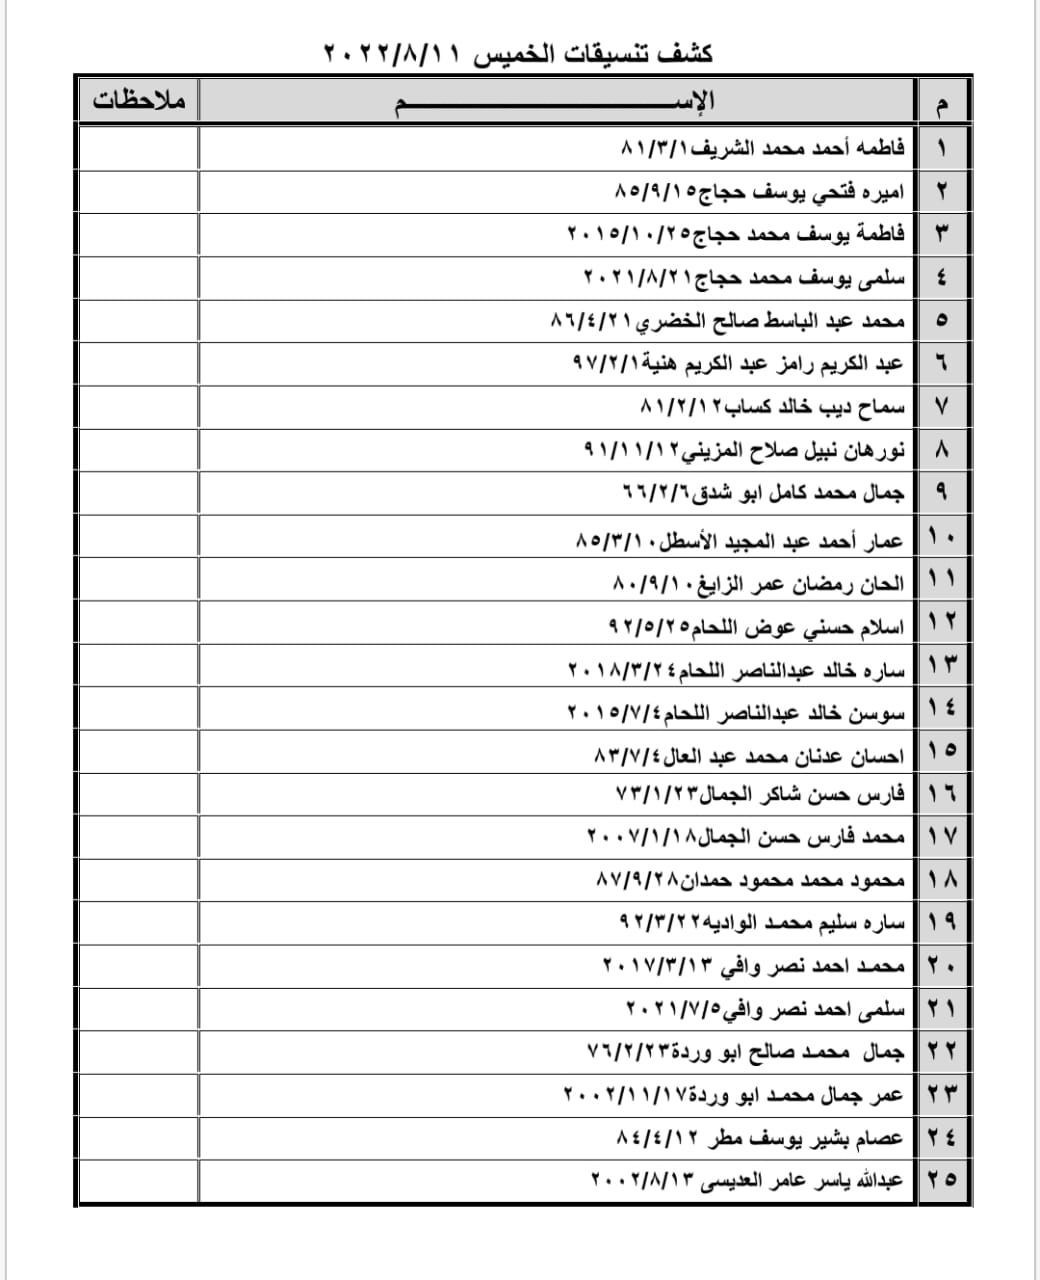 بالأسماء: كشف "تنسيقات مصرية" للسفر عبر معبر رفح الخميس 11 أغسطس 2022